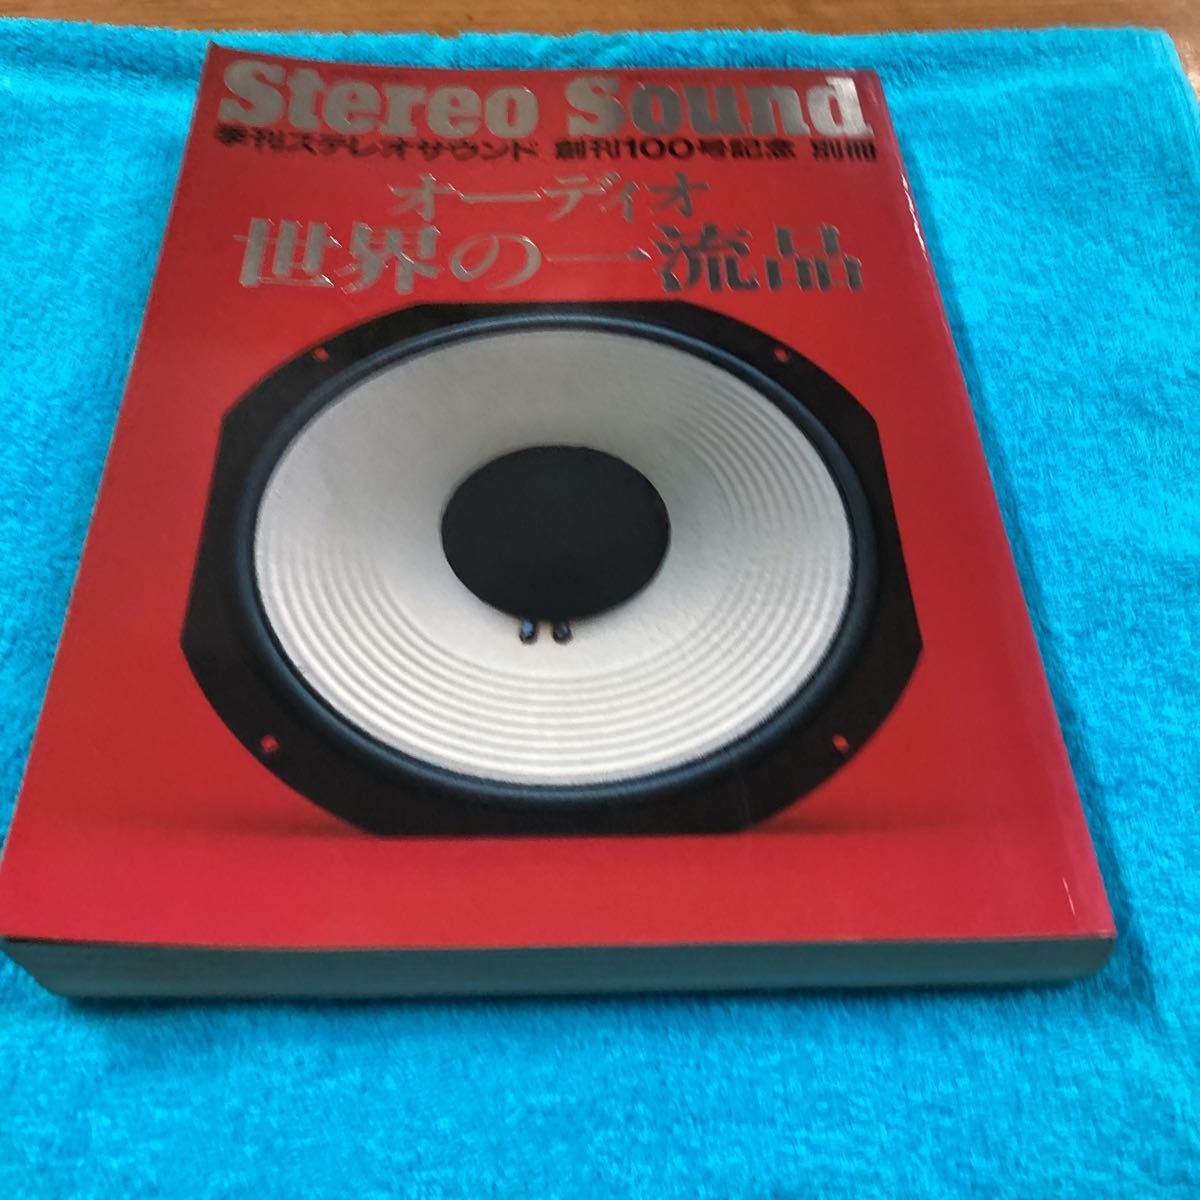 別冊ステレオサウンド、オーディオ世界の一流品、Stereo Sound、オーディオ 雑誌、季刊ステレオサウンド、100号記念別冊 、_画像5